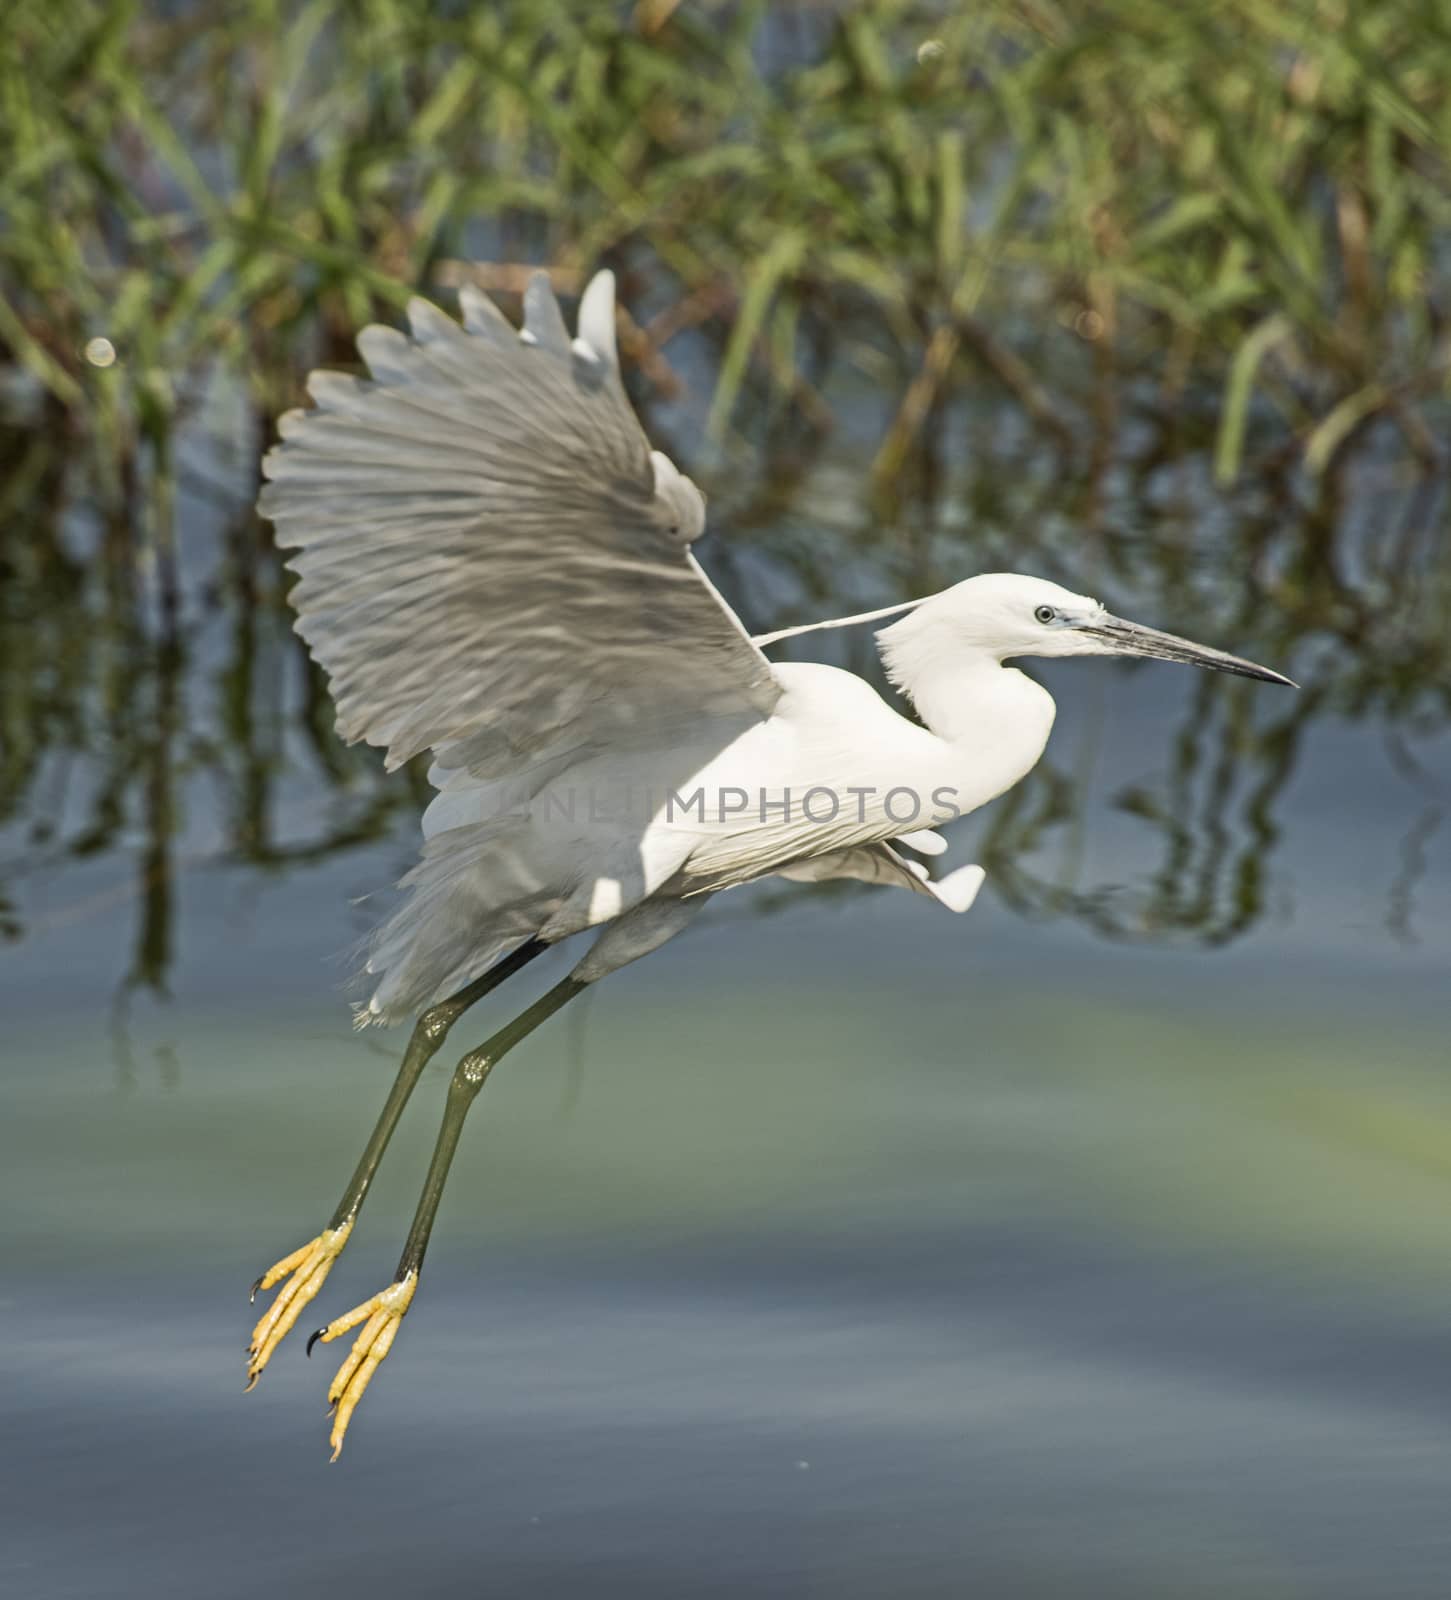 Little egret egretta garzetta wild bird in flight with river reeds rural background landscape